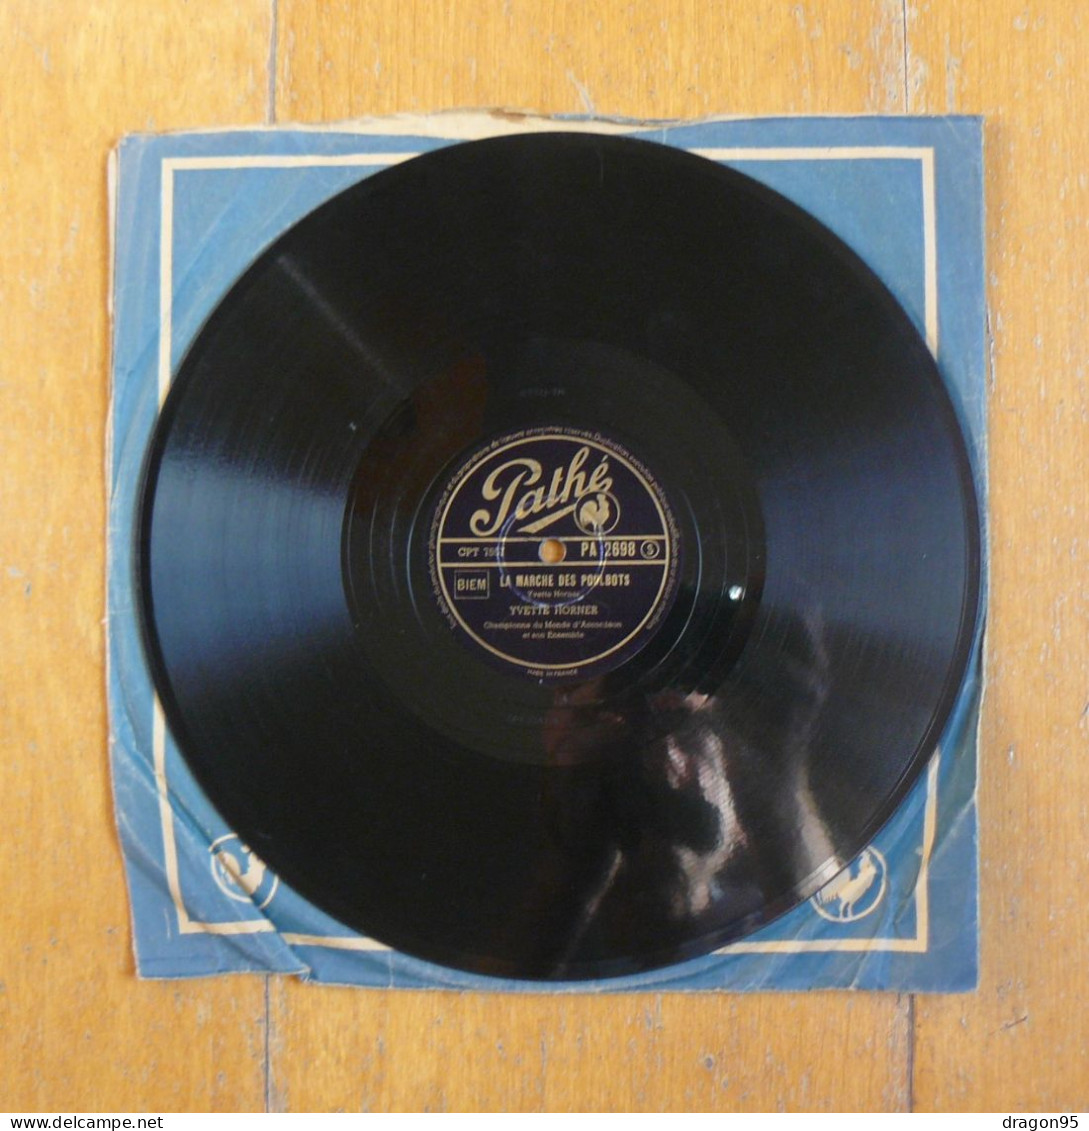 Yvette HORNER : Atomico / La Marche Des Poulbots - Pathé PA 2698 - 78 Rpm - Gramophone Records